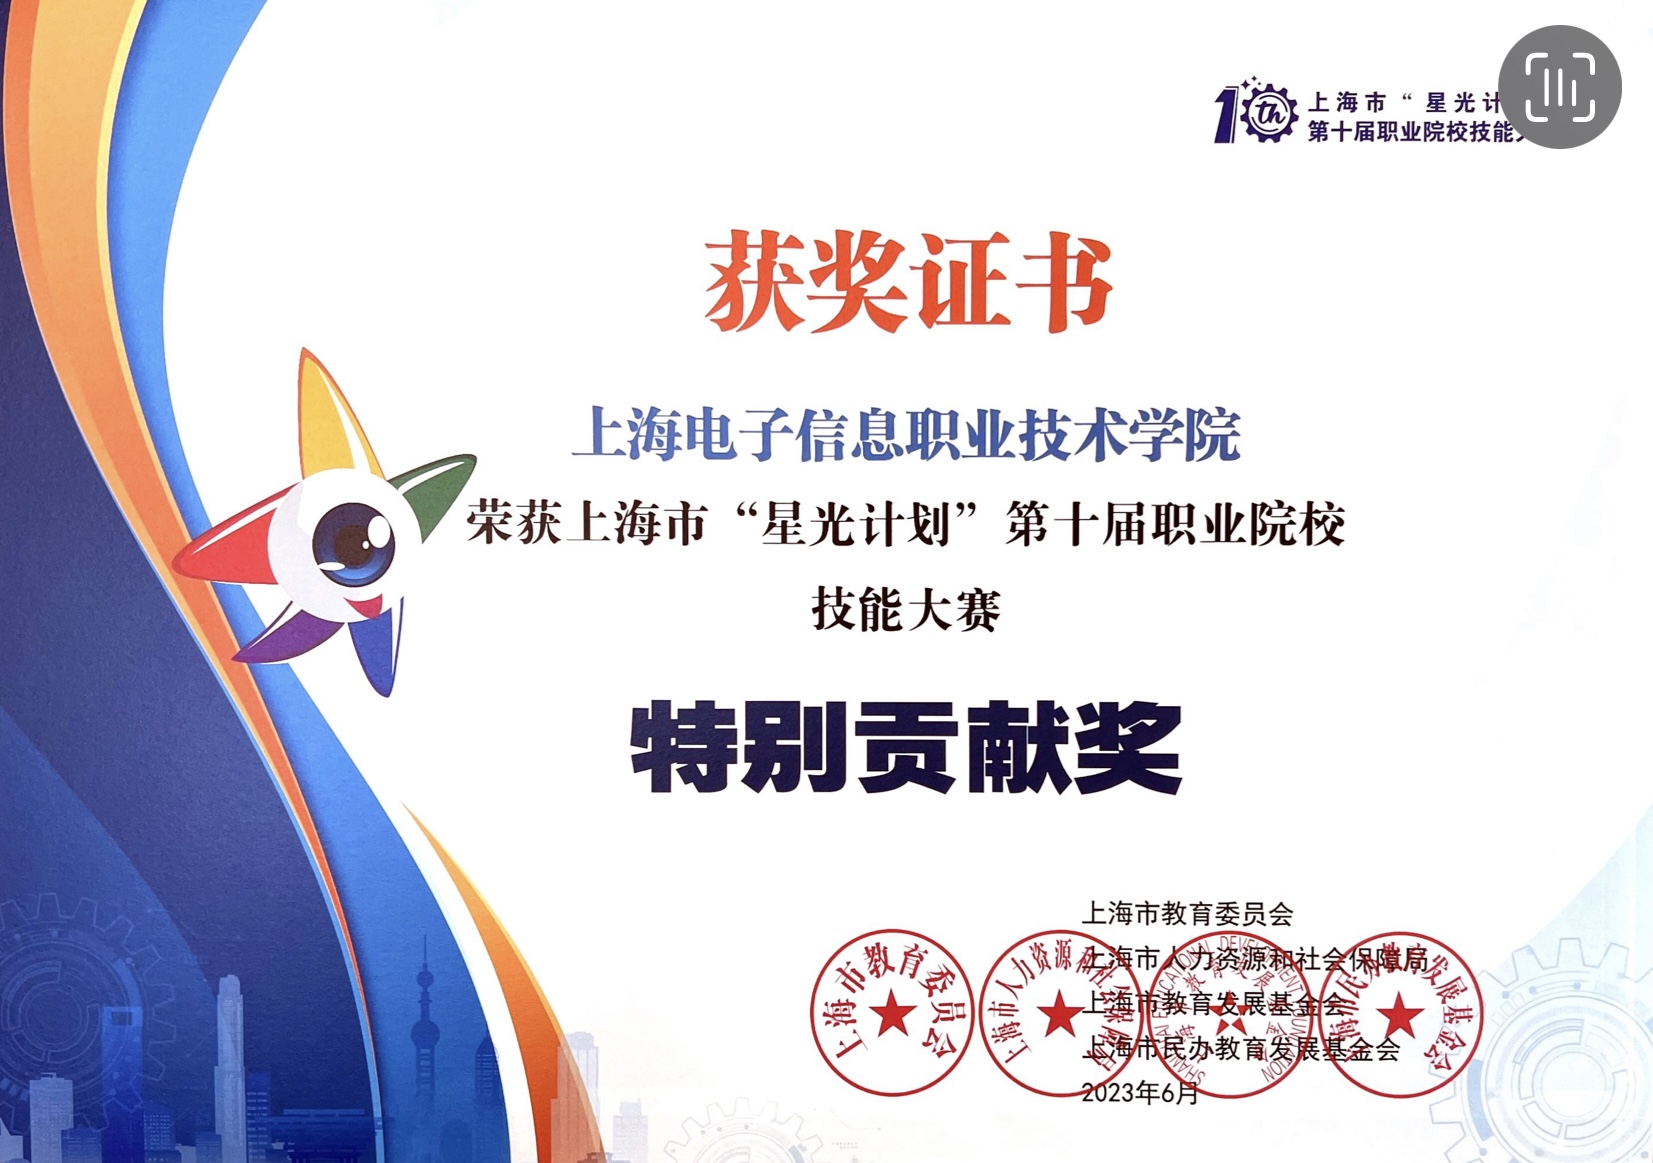 上海电子信息职业技术学院在“星光计划”职业院校技能大赛中荣获佳绩